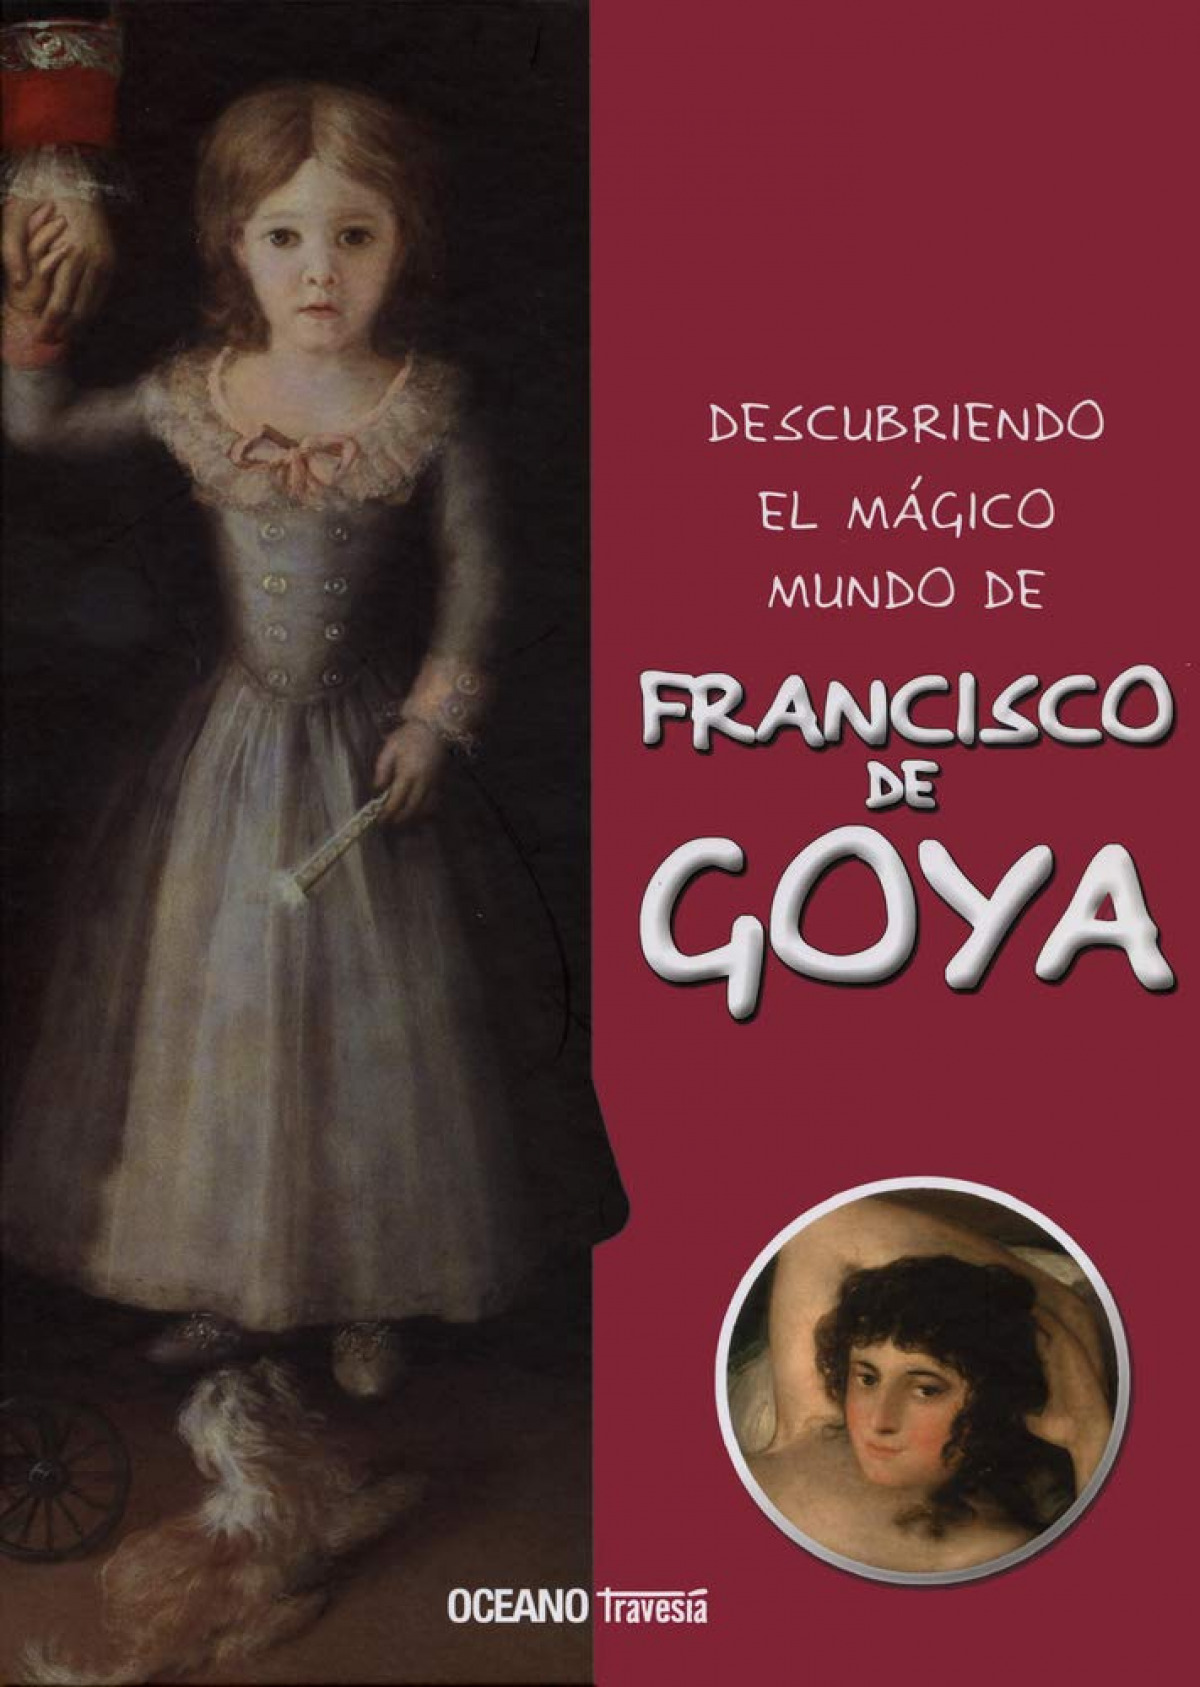 Descubriendo El Mágico Mundo de Francisco de Goya (Descubriendo el mundo mágico)